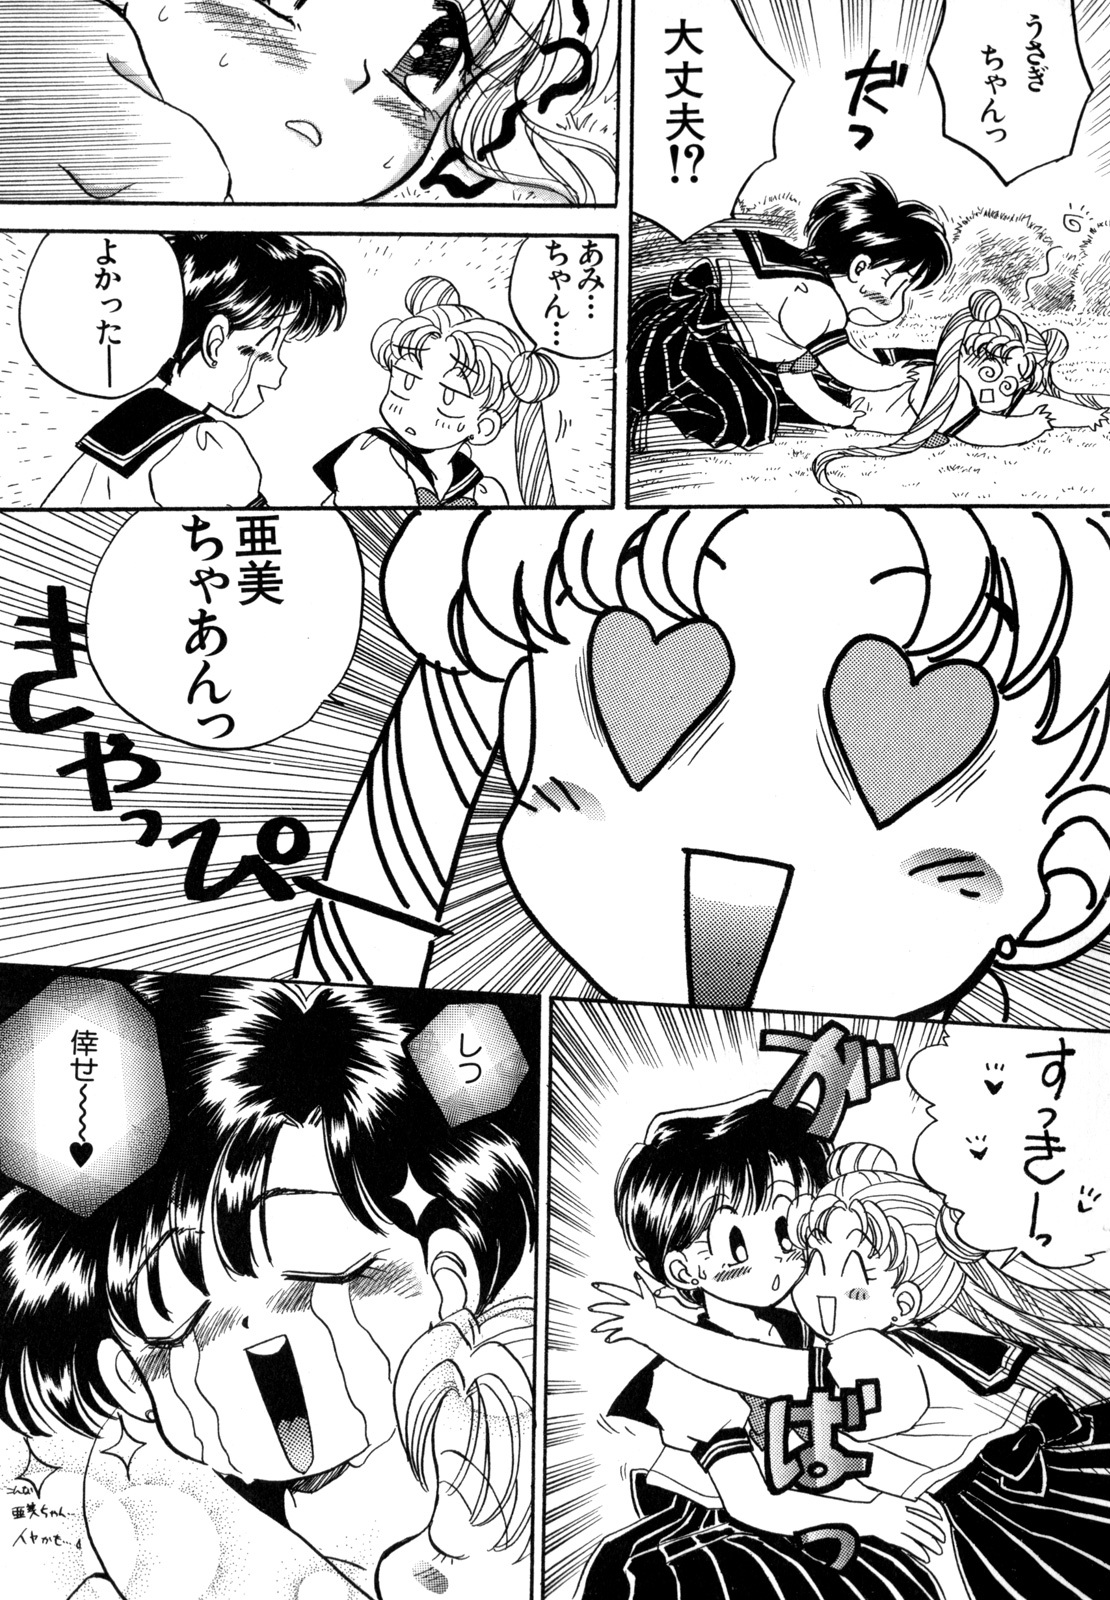 [Anthology] Lunatic Party 4 (Bishoujo Senshi Sailor Moon) page 34 full